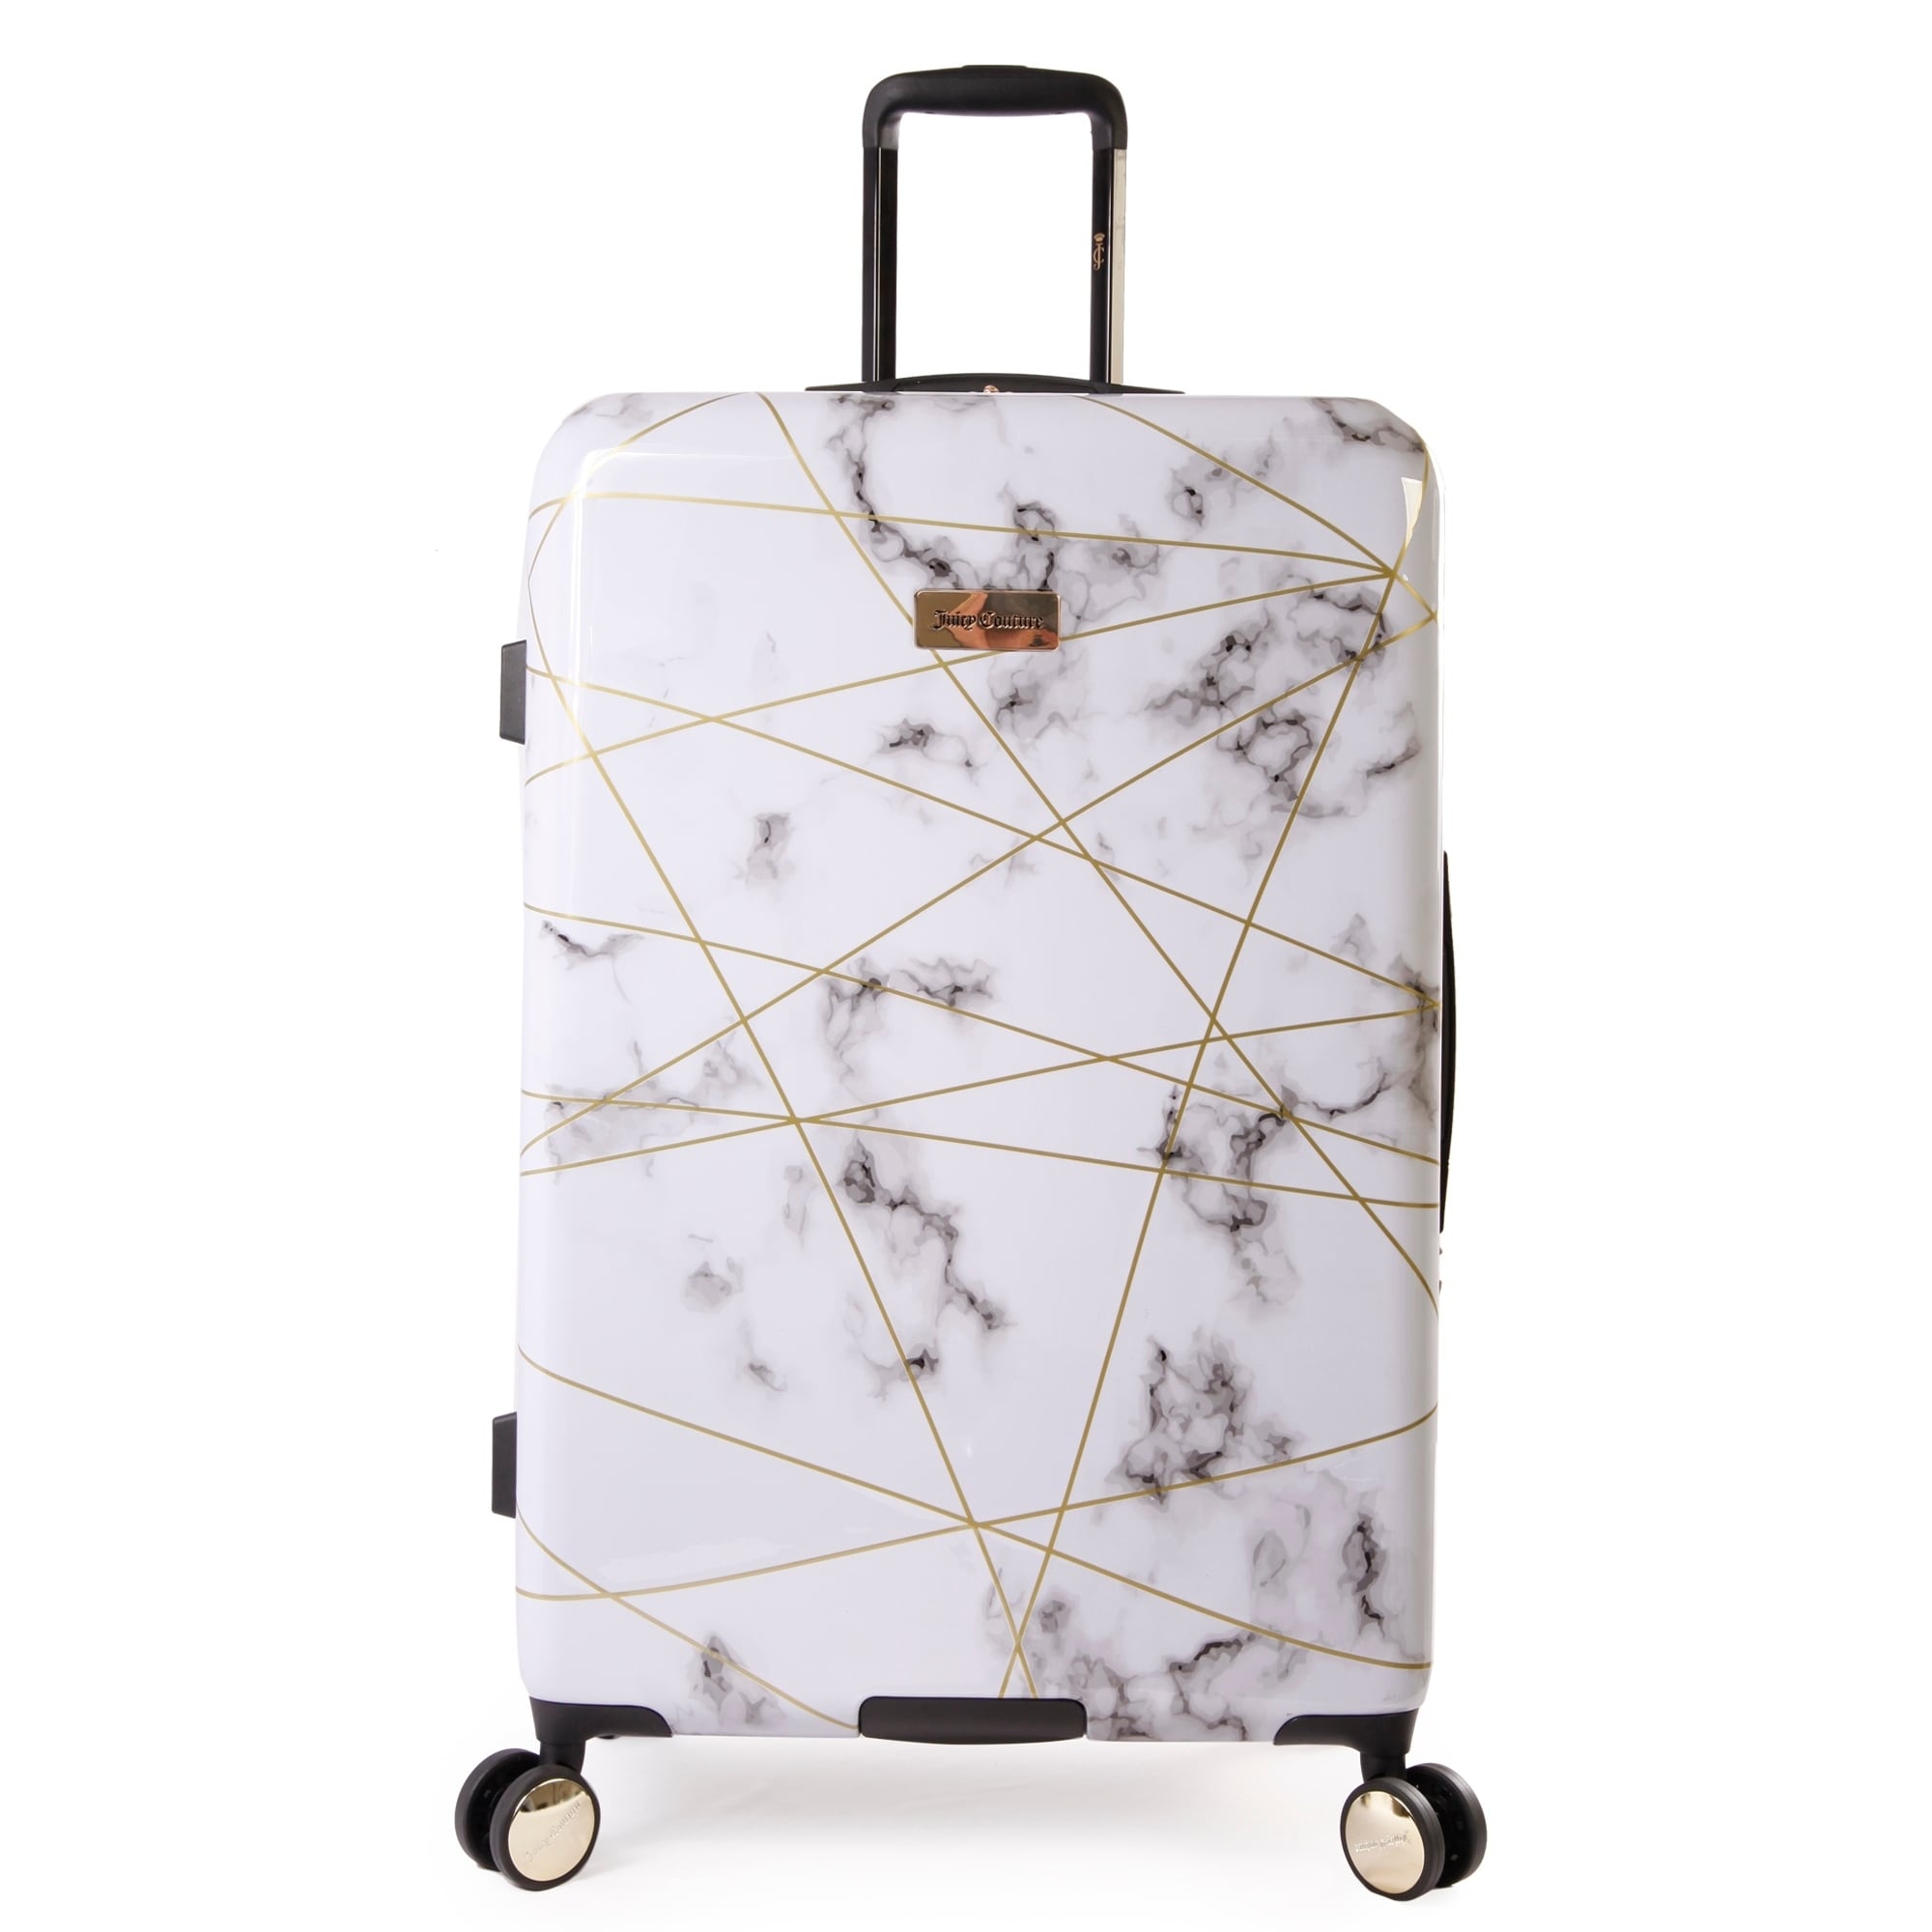 29 inch suitcase walmart